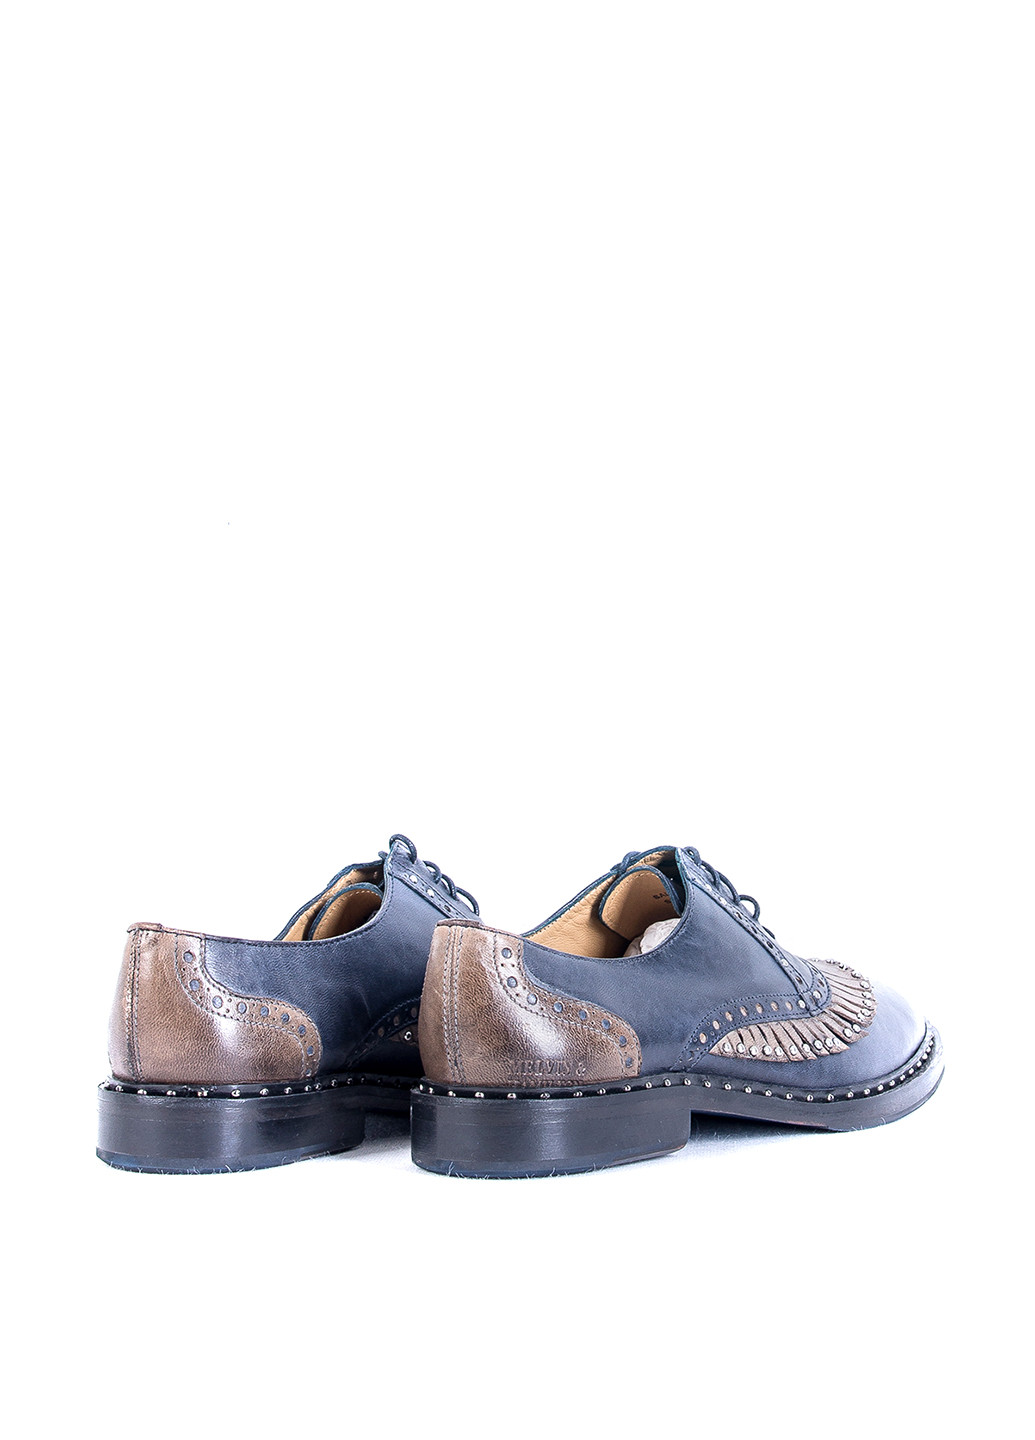 Темно-синие классические туфли Melvin & Hamilton на шнурках